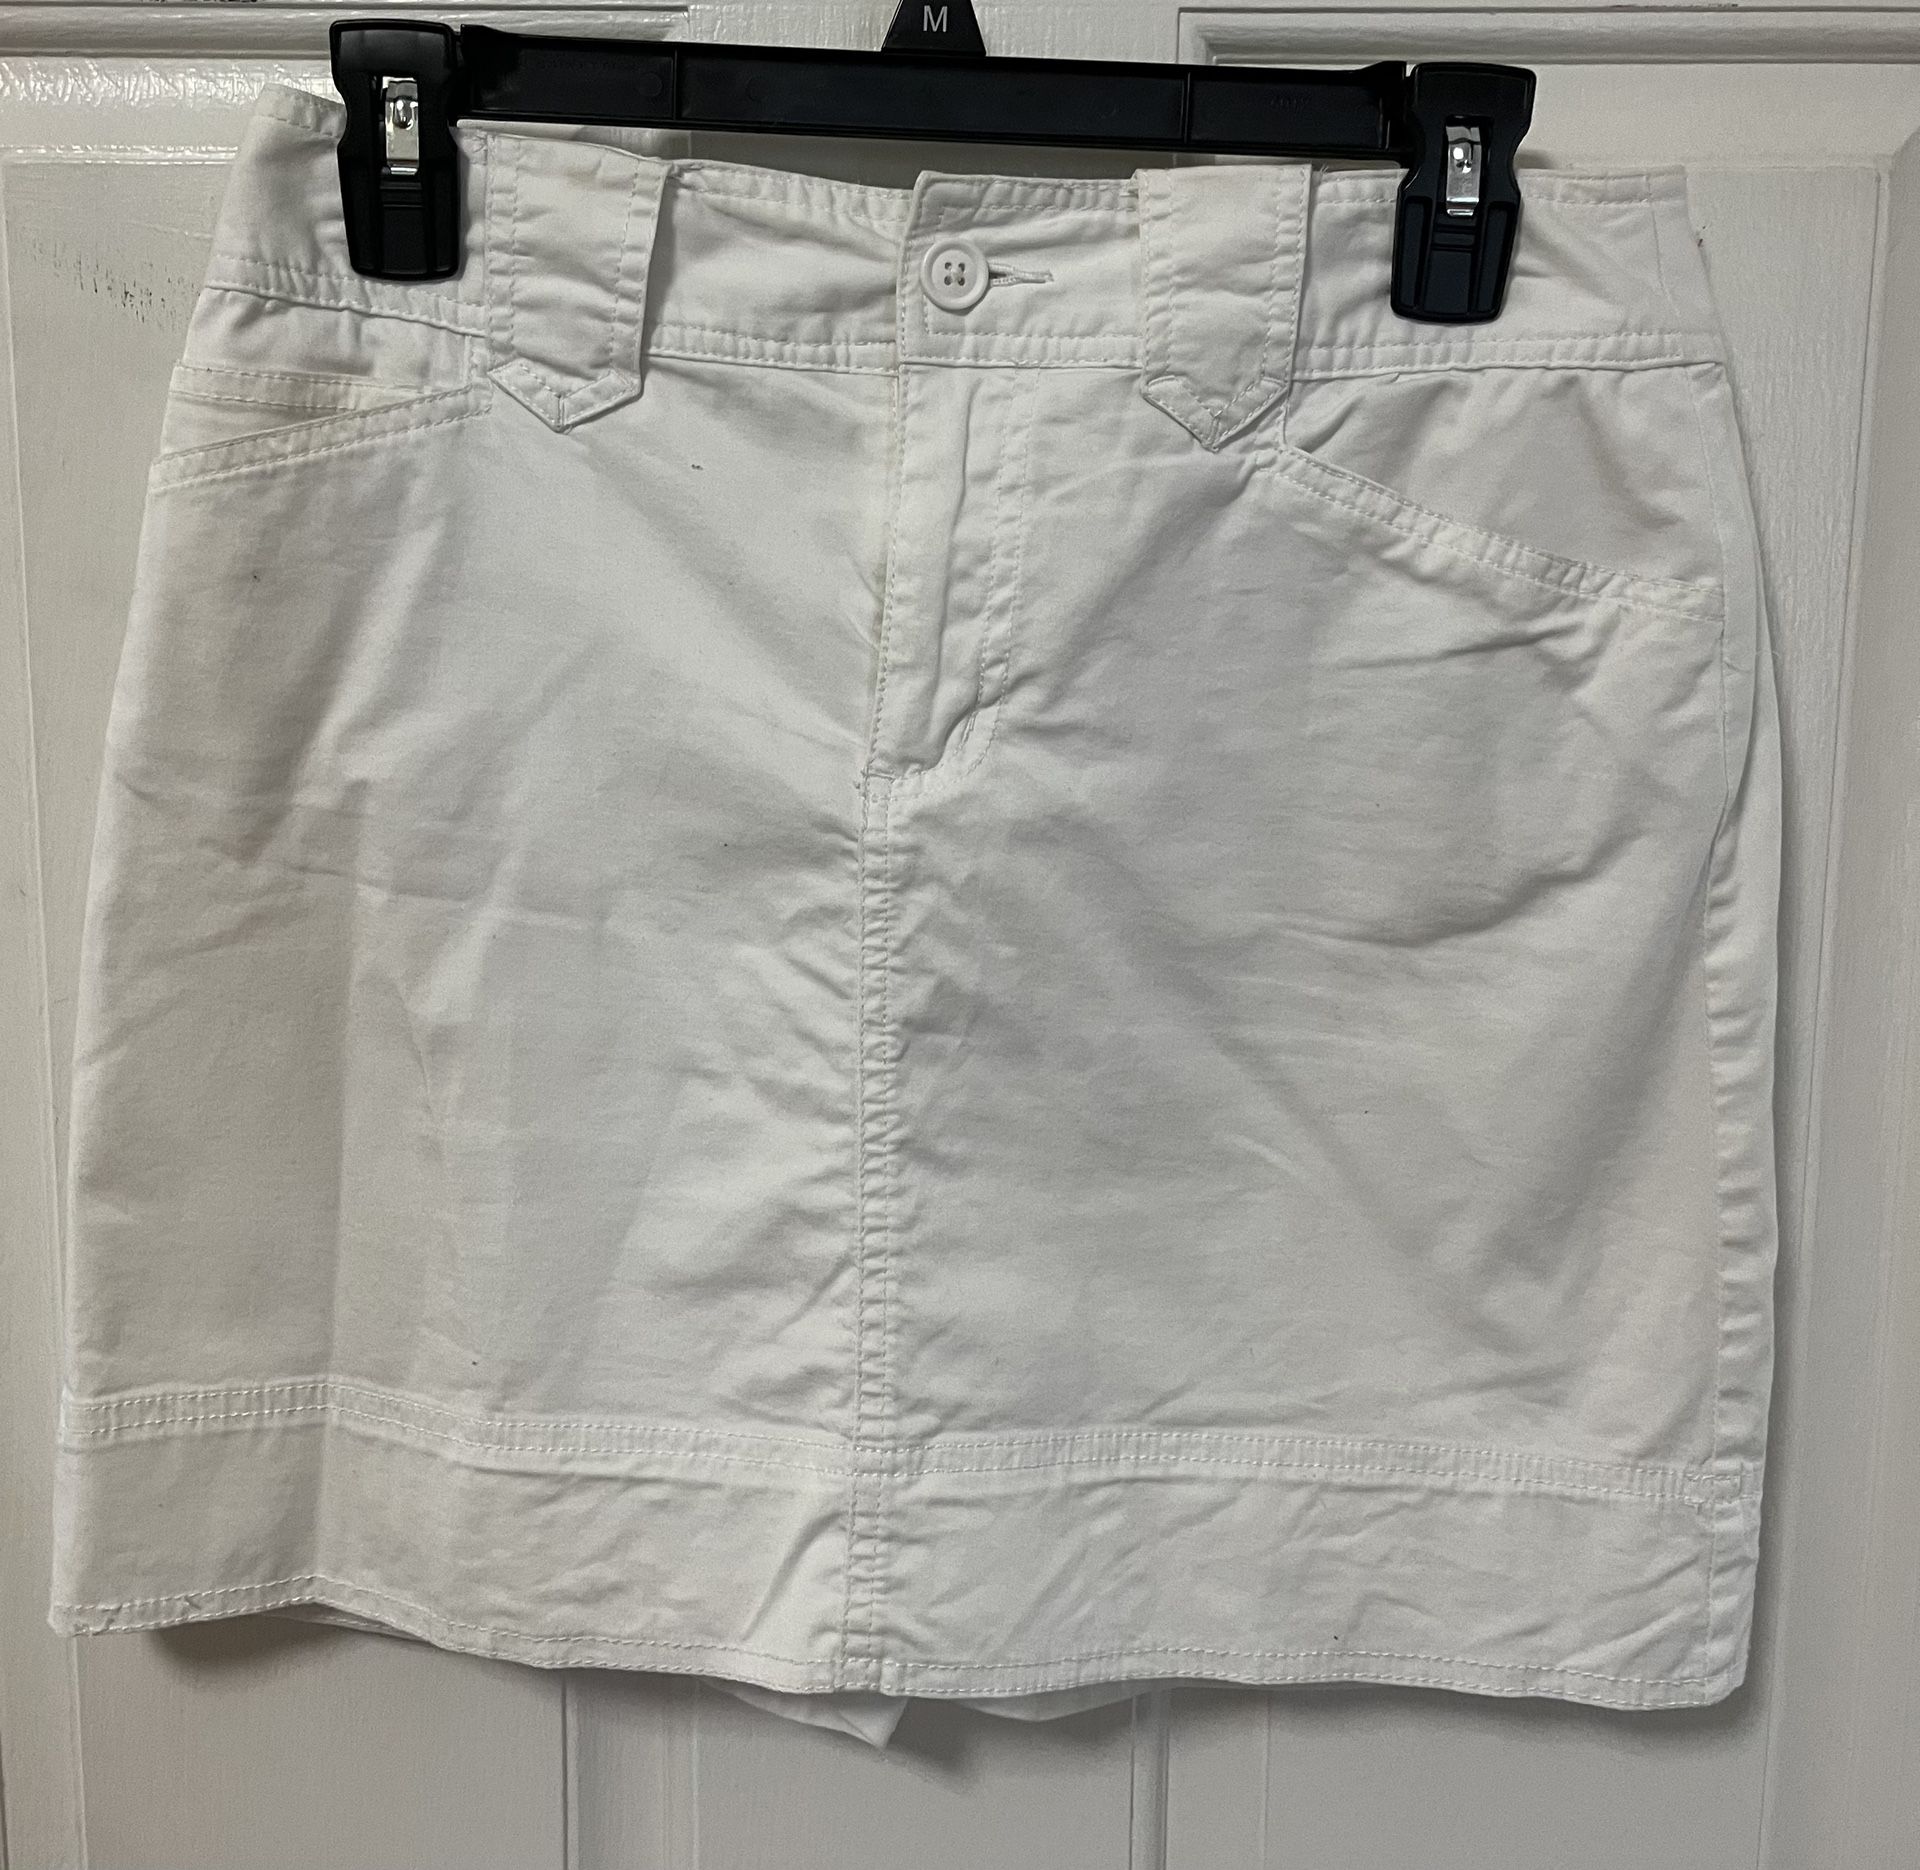 White Skirt Size 4 St. John’s Bay